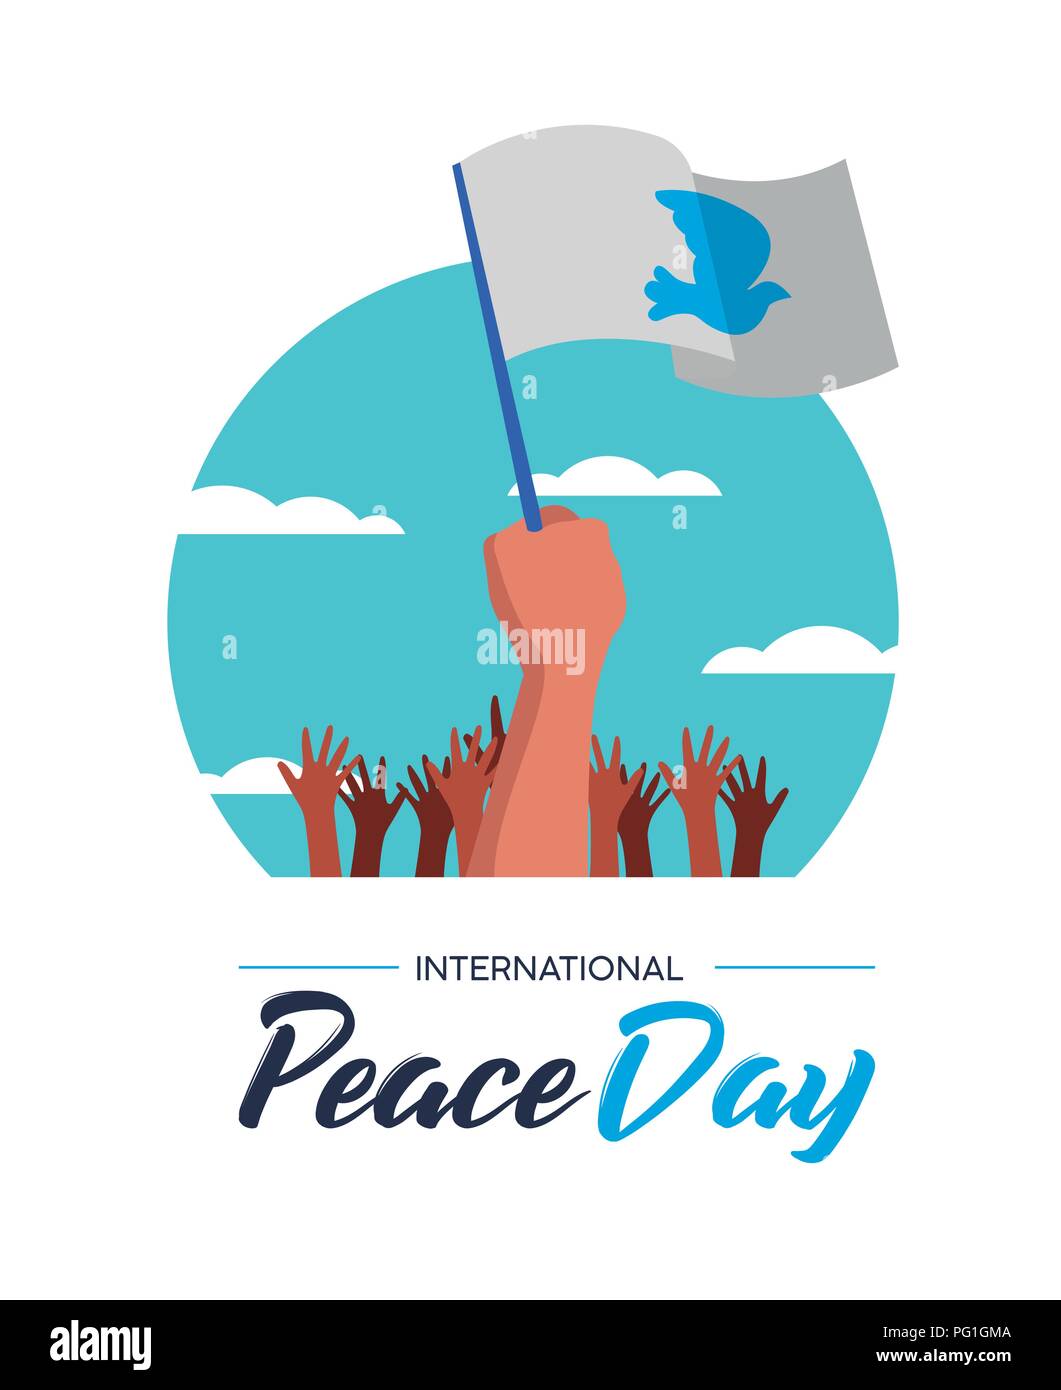 Ilustración del Día Internacional de la paz, la libertad mundial celebración para todos. Grupo de manos de gente con banderas blancas y palomas en especial ev pacifista. Ilustración del Vector